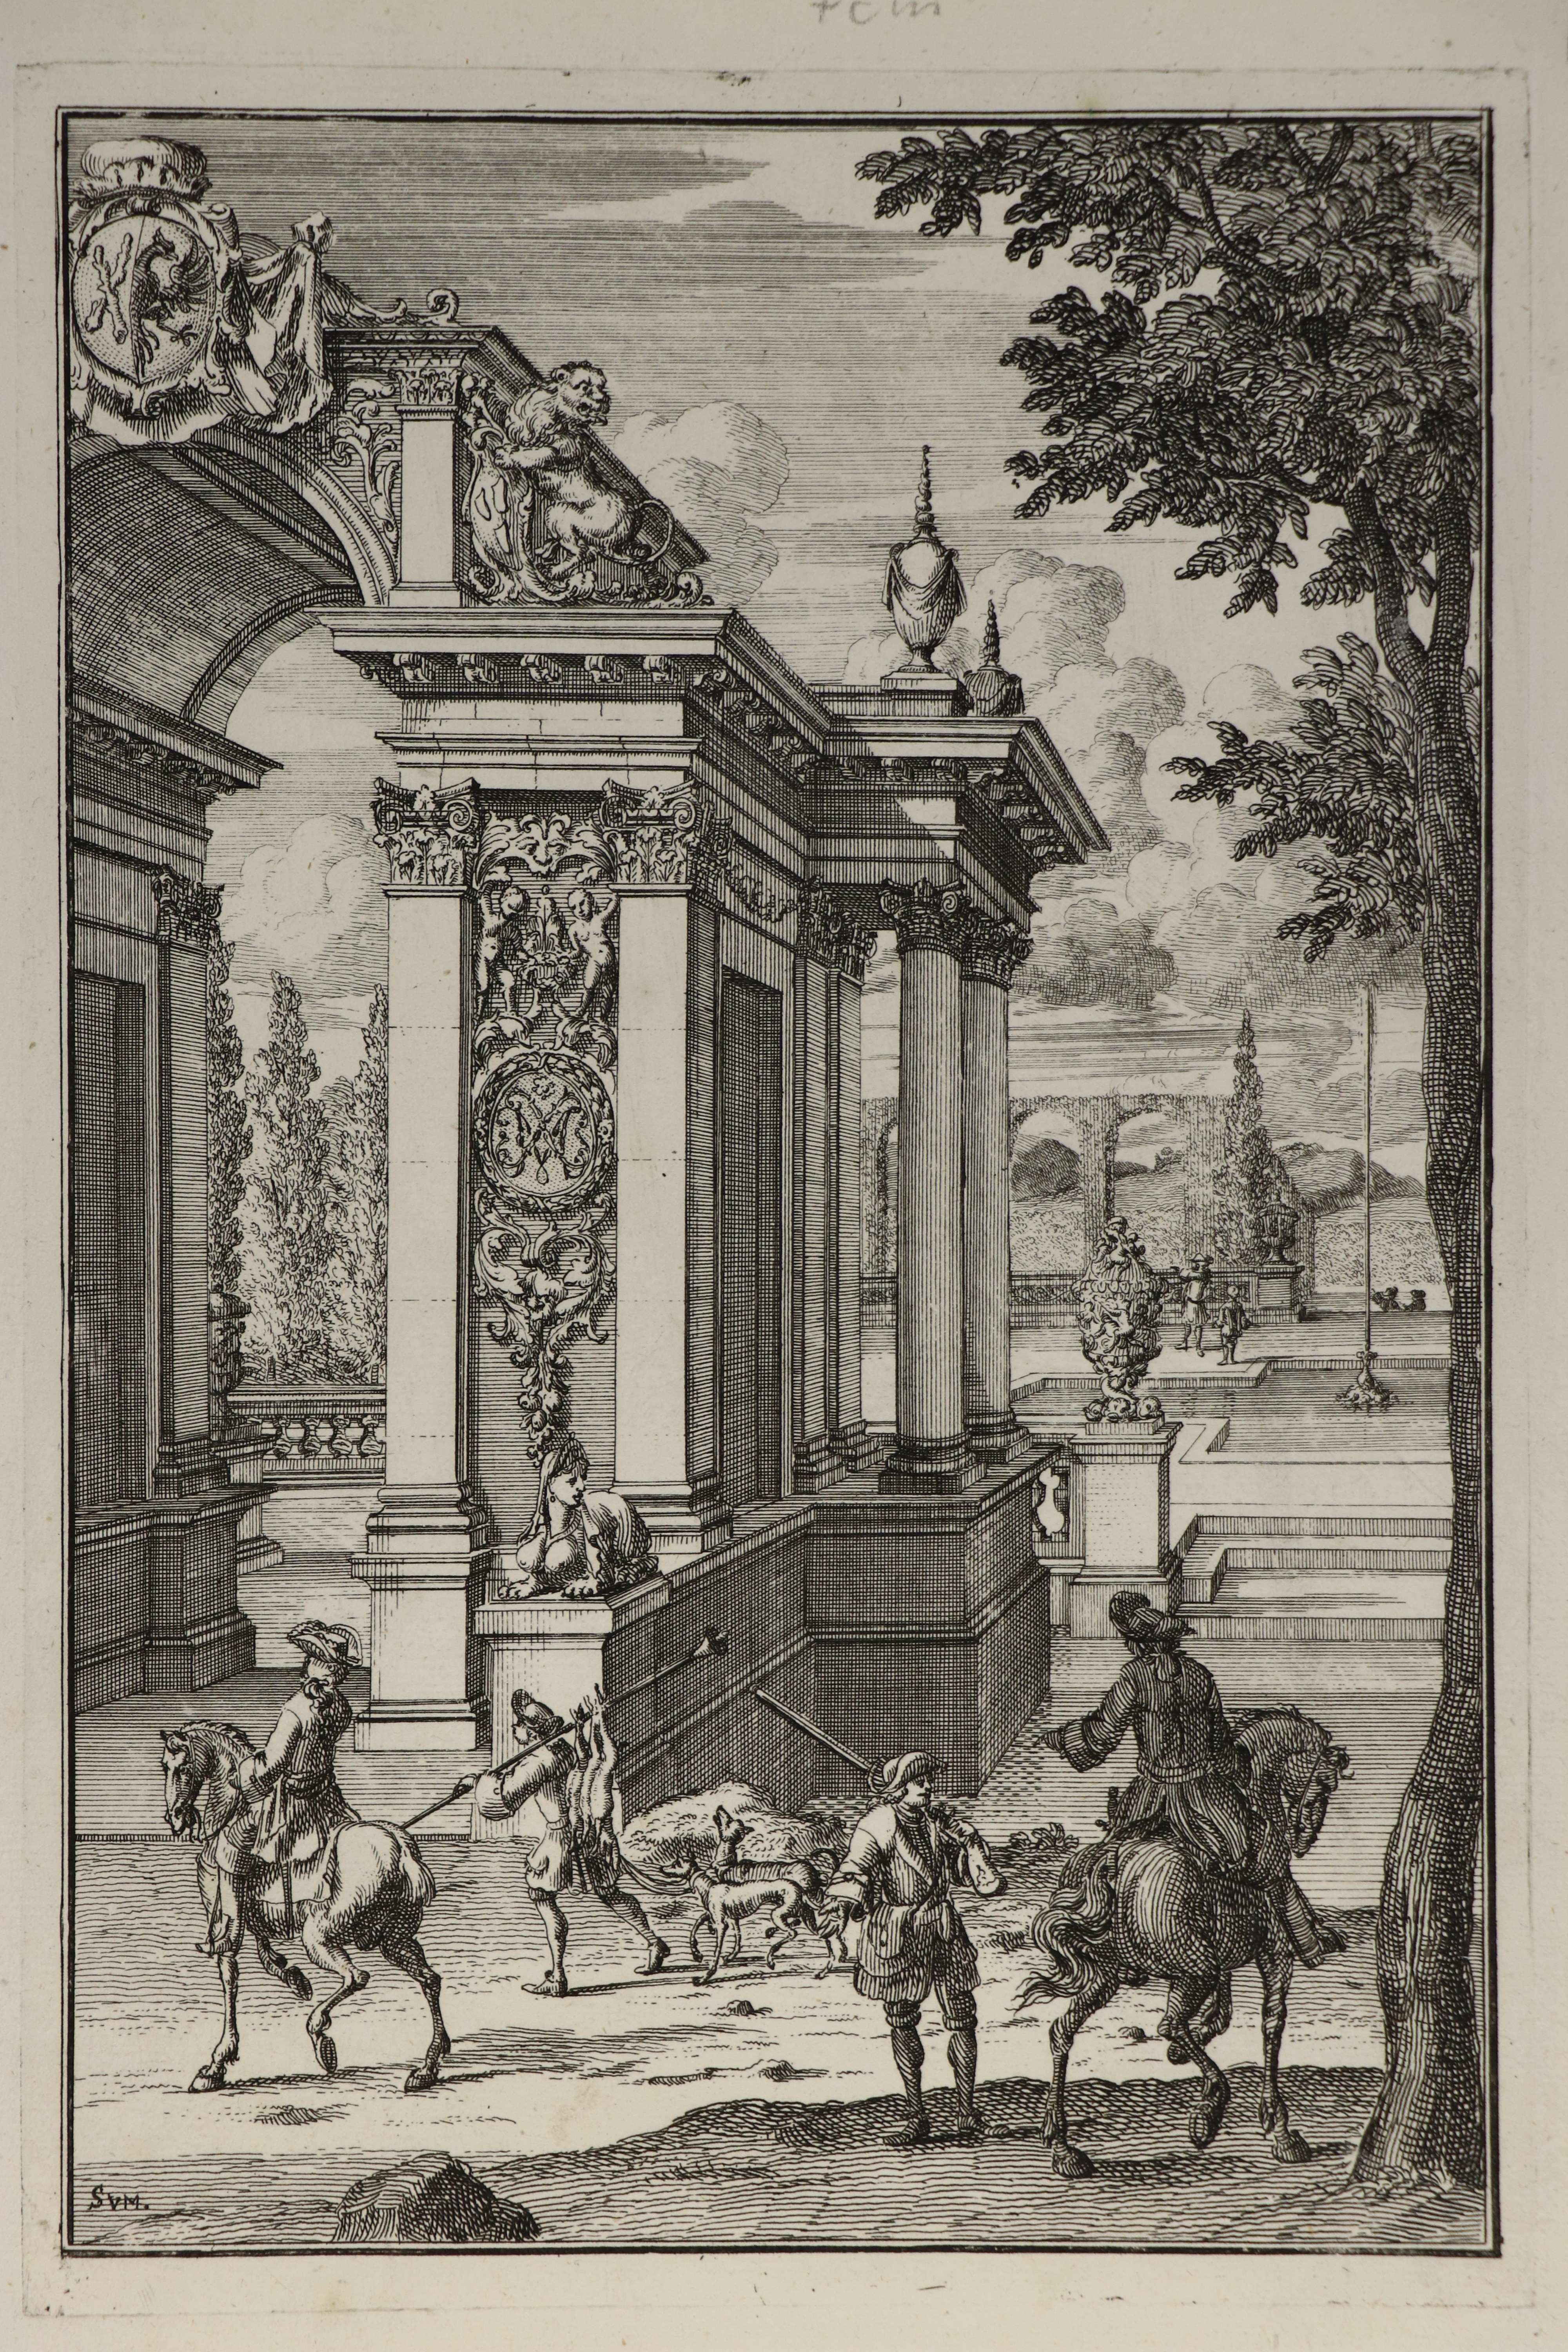 Rückkehr von der Jagd, van der Meulen, 1707 (Städtisches Museum Schloss Rheydt CC BY)